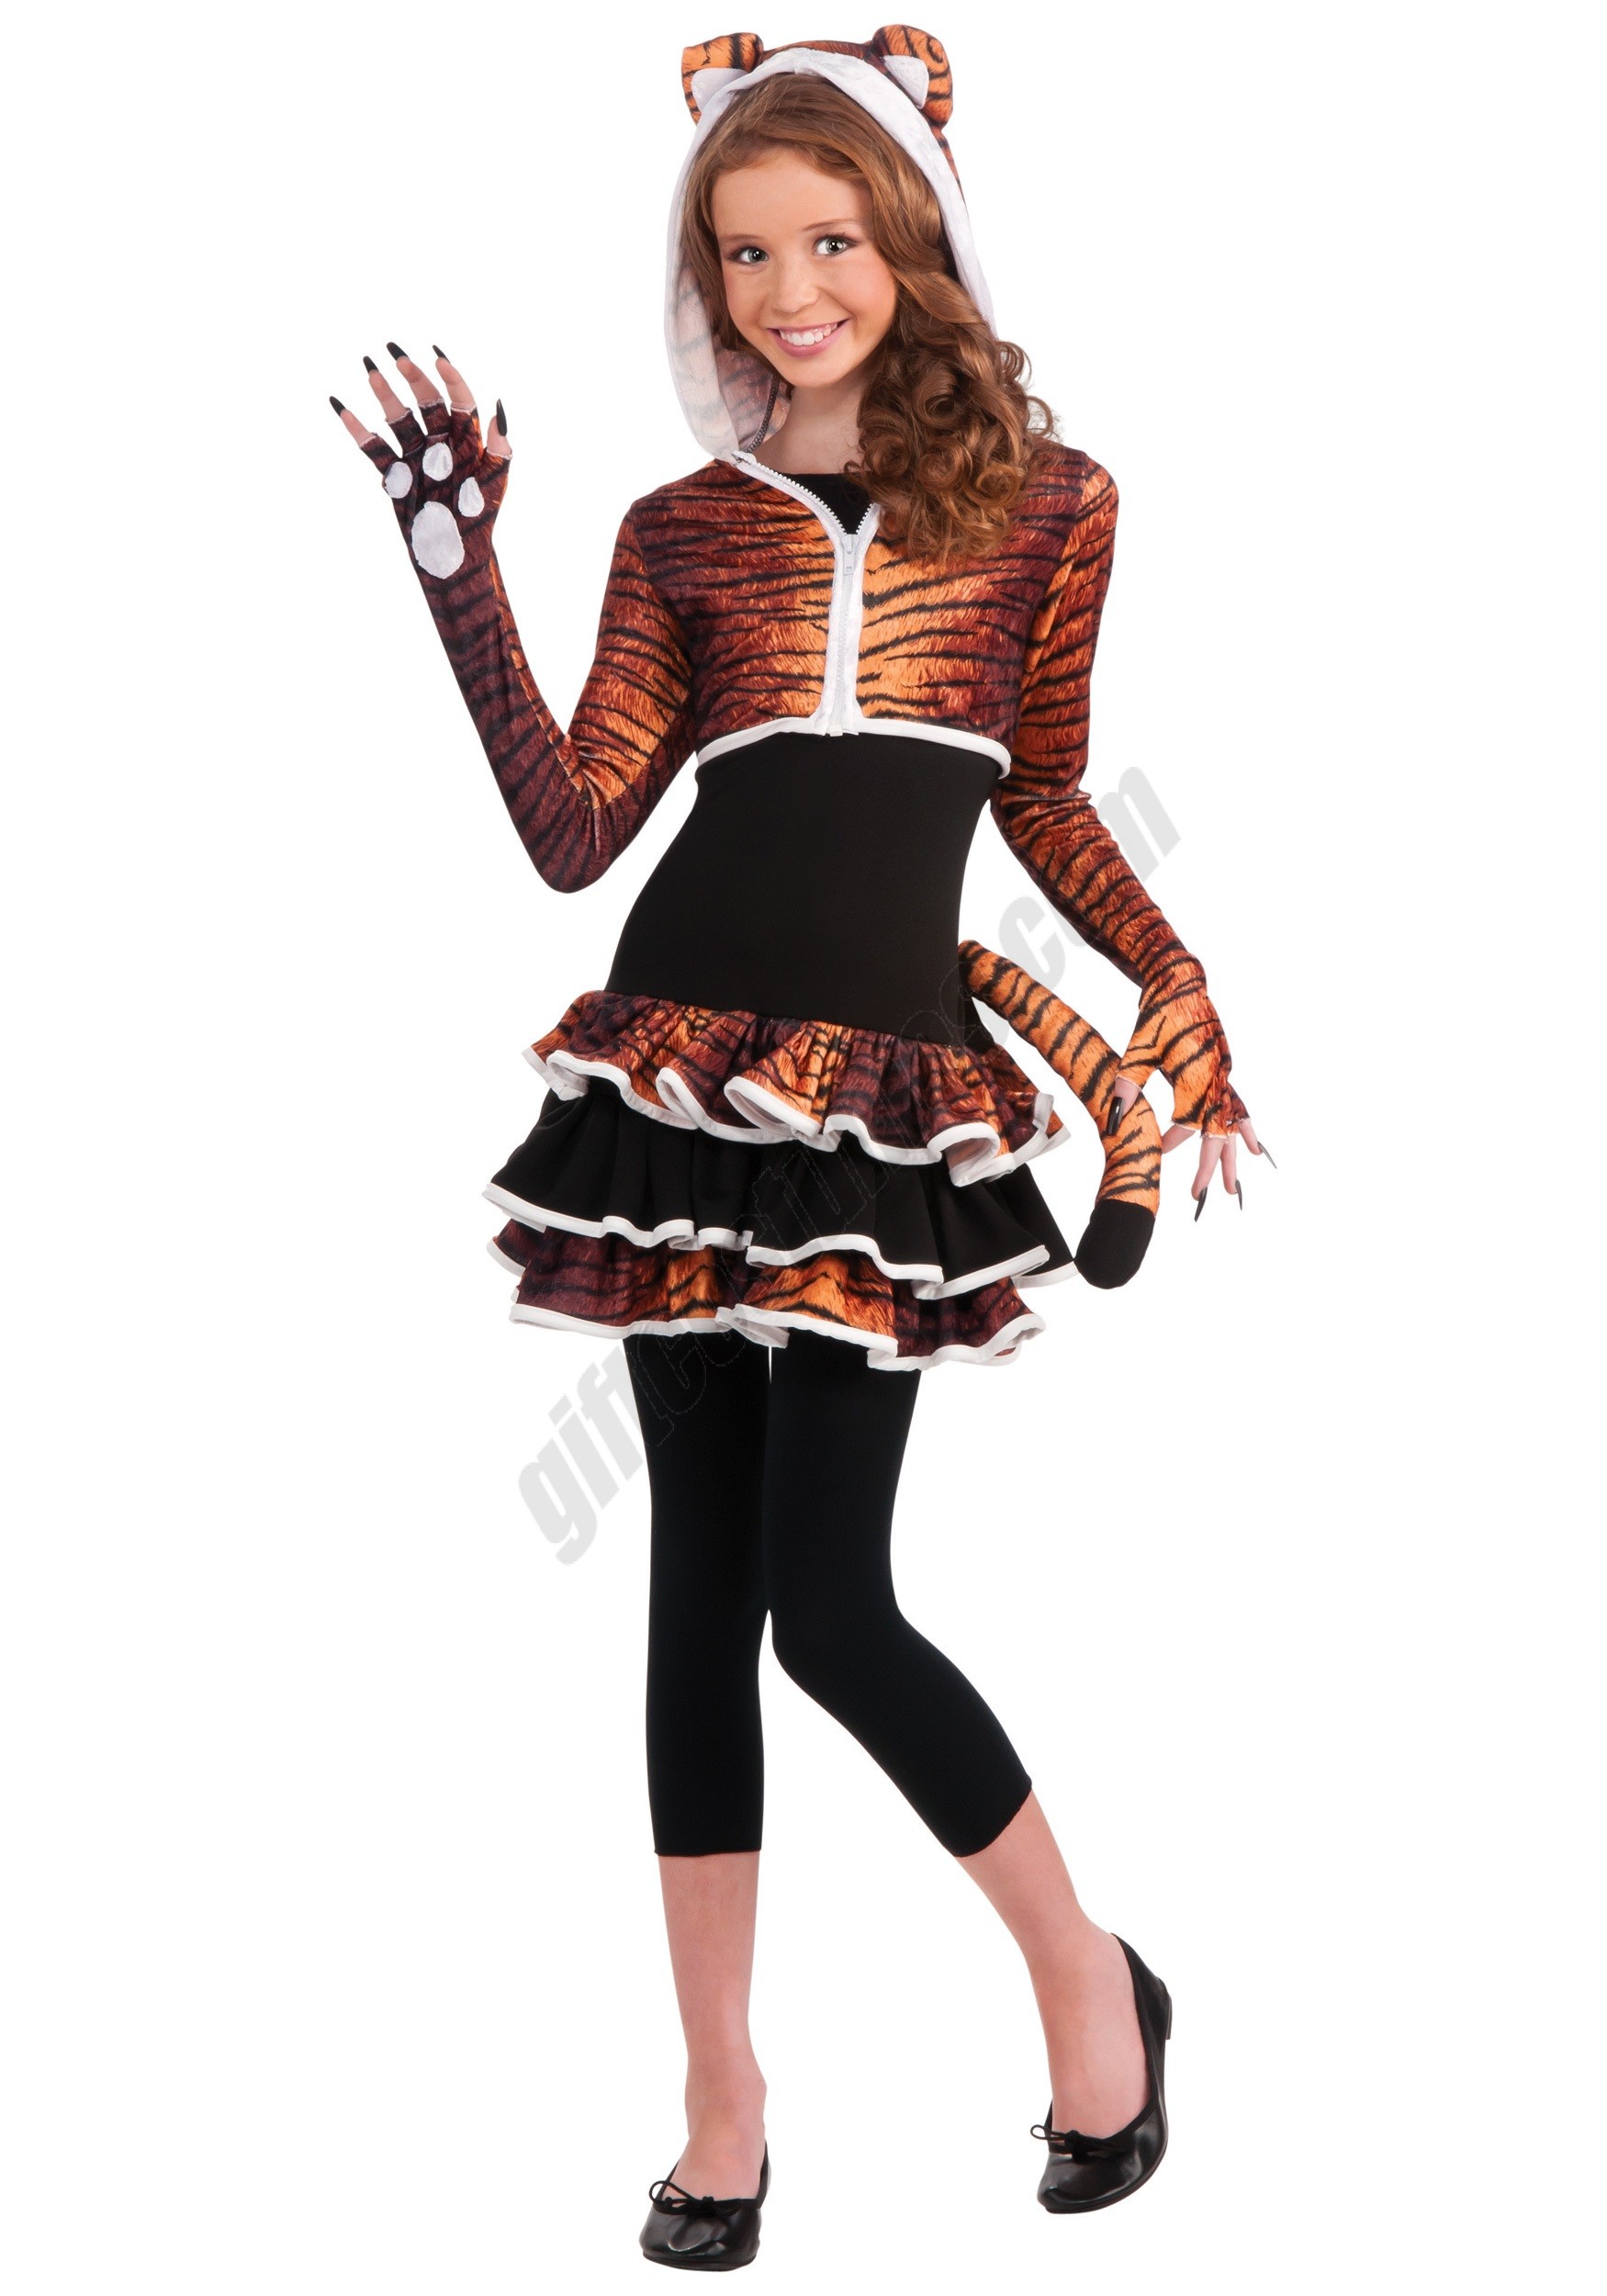 Tween Tigress Costume Promotions - Tween Tigress Costume Promotions